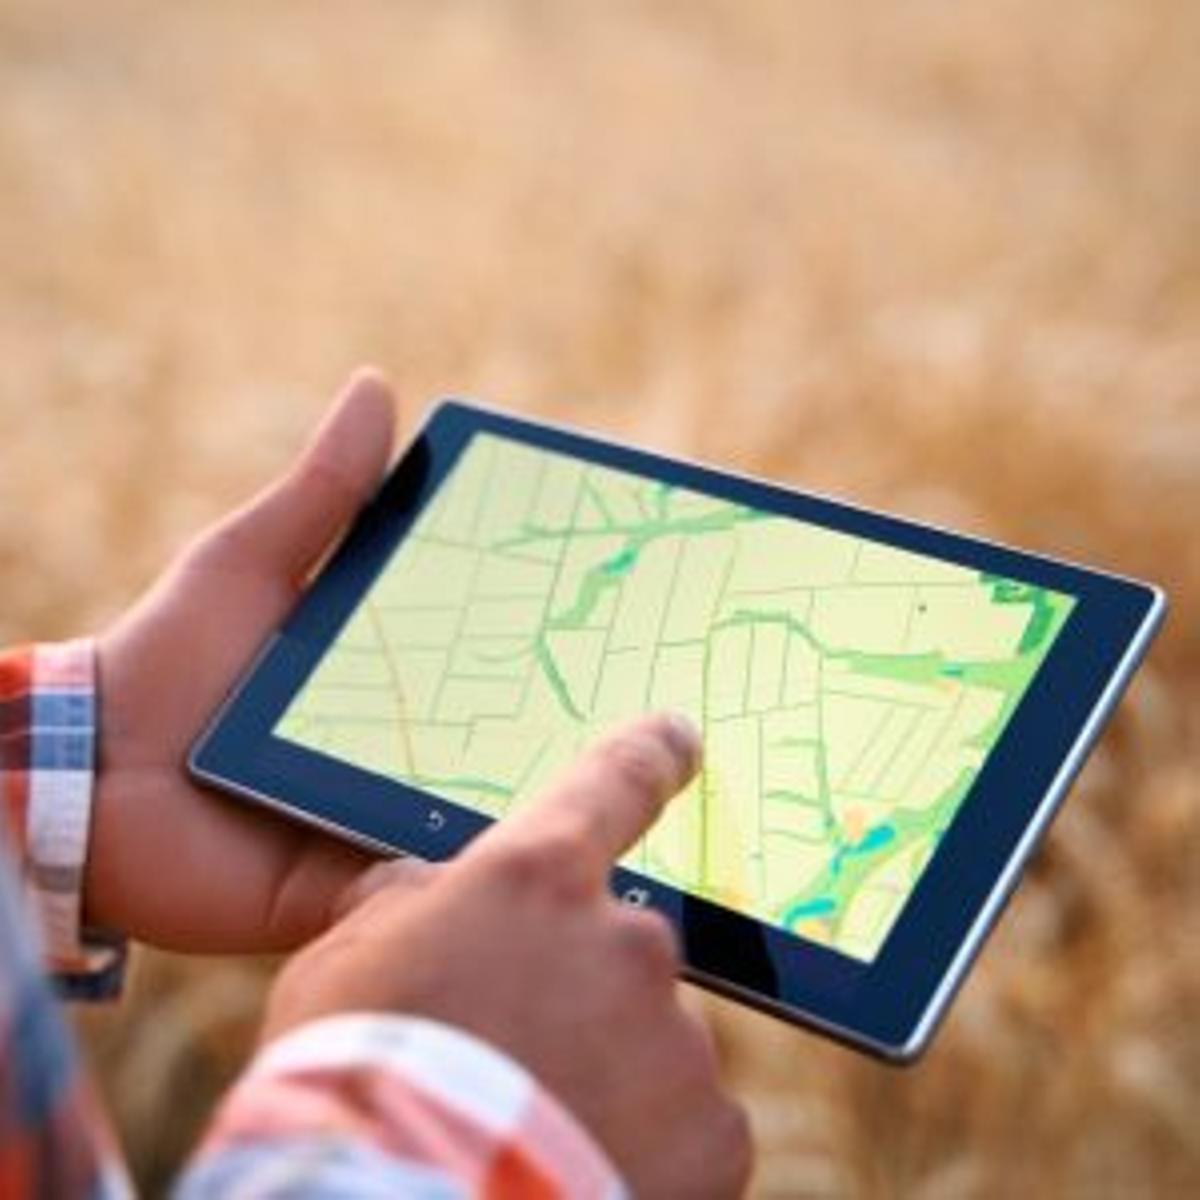 Los dispositivos GPS permiten detectar los puntos más comunes donde se ubican las plagas